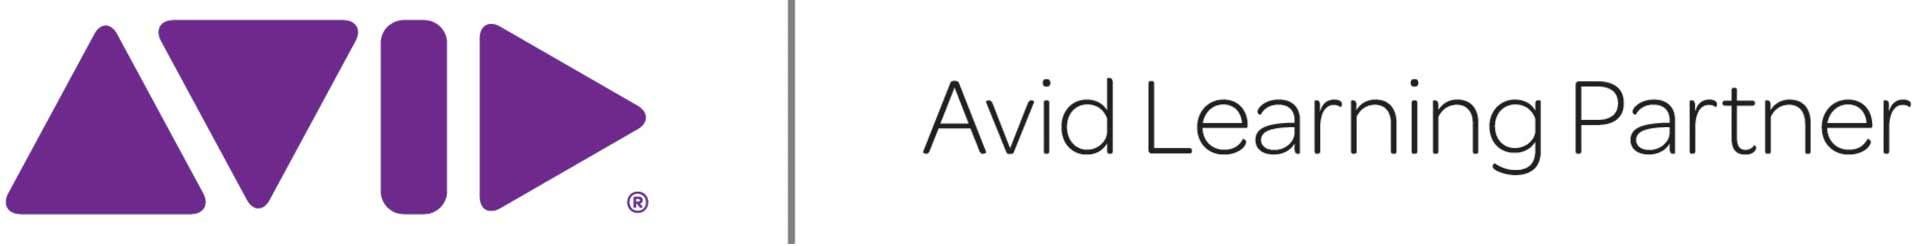 Avid Learning Partner Logo